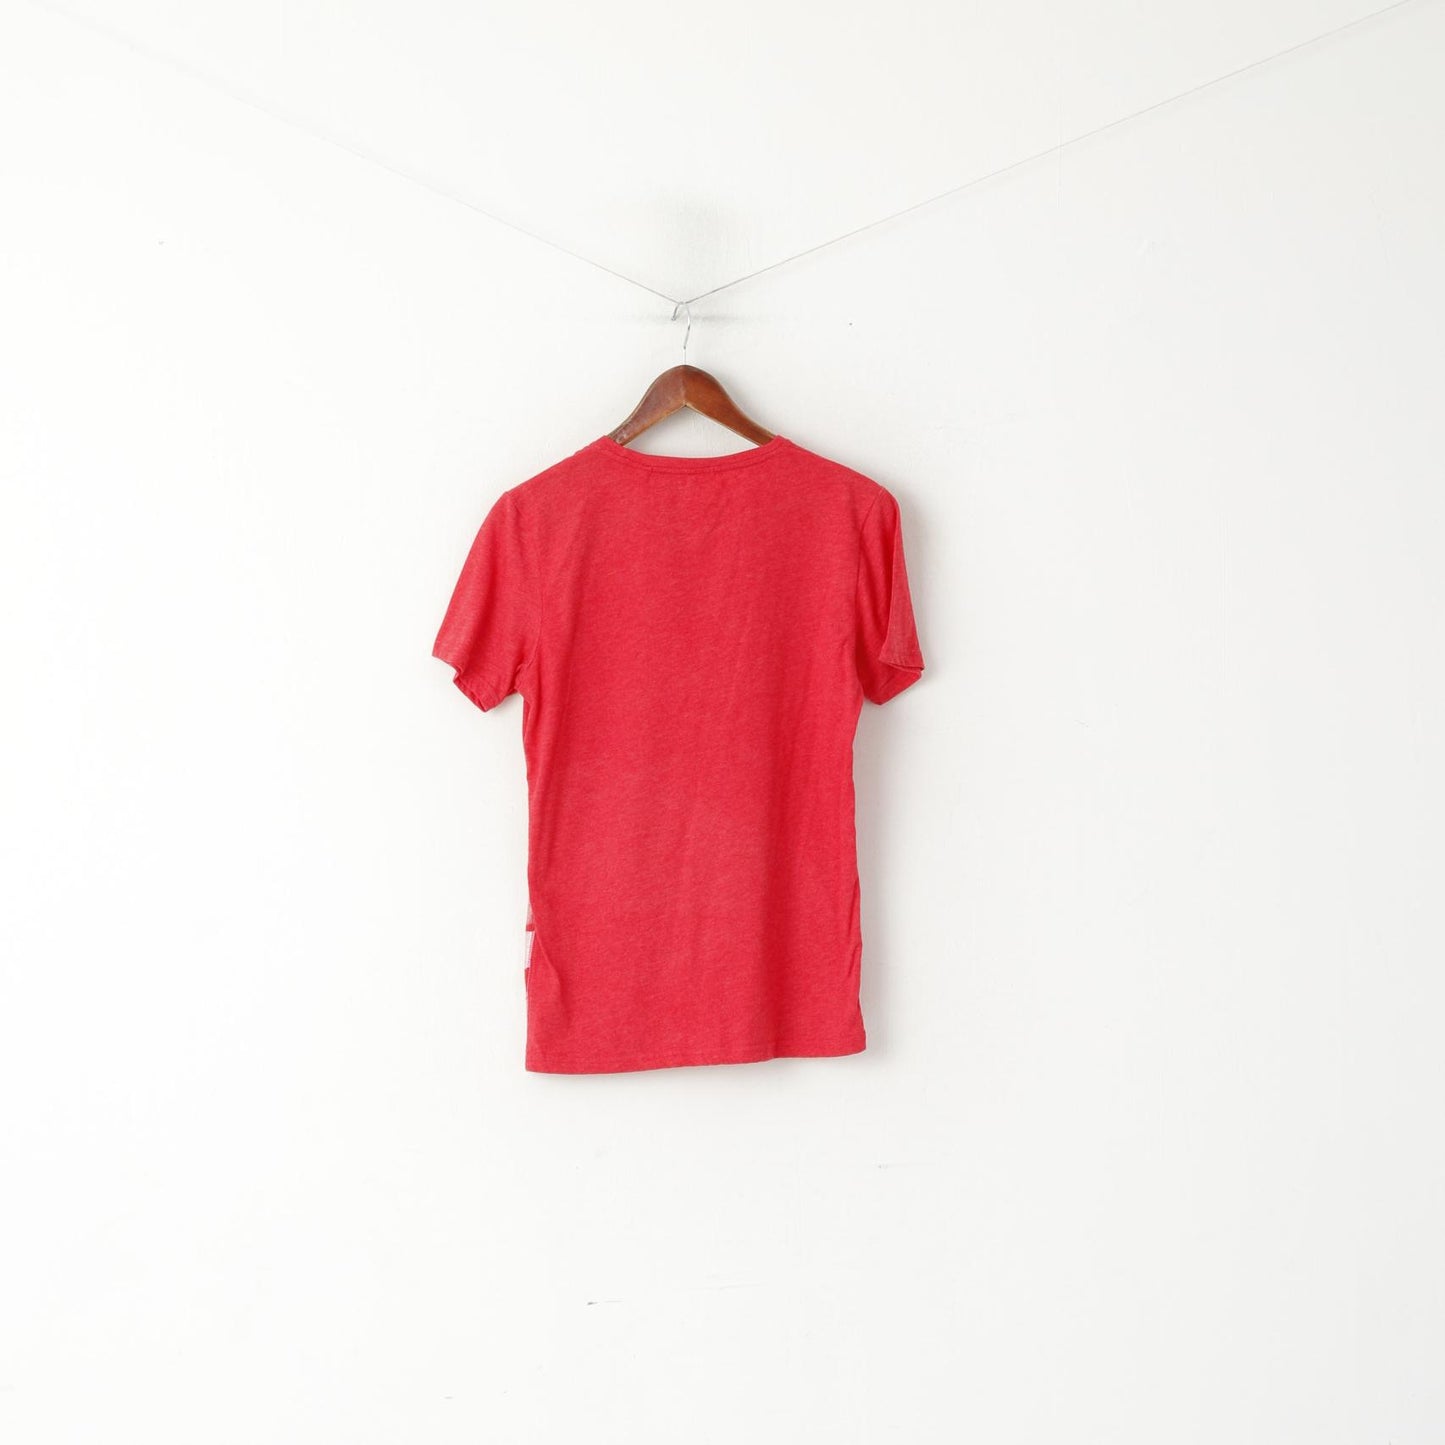 Next The Beatles – chemise en coton rouge pour hommes, haut de groupe de musique graphique